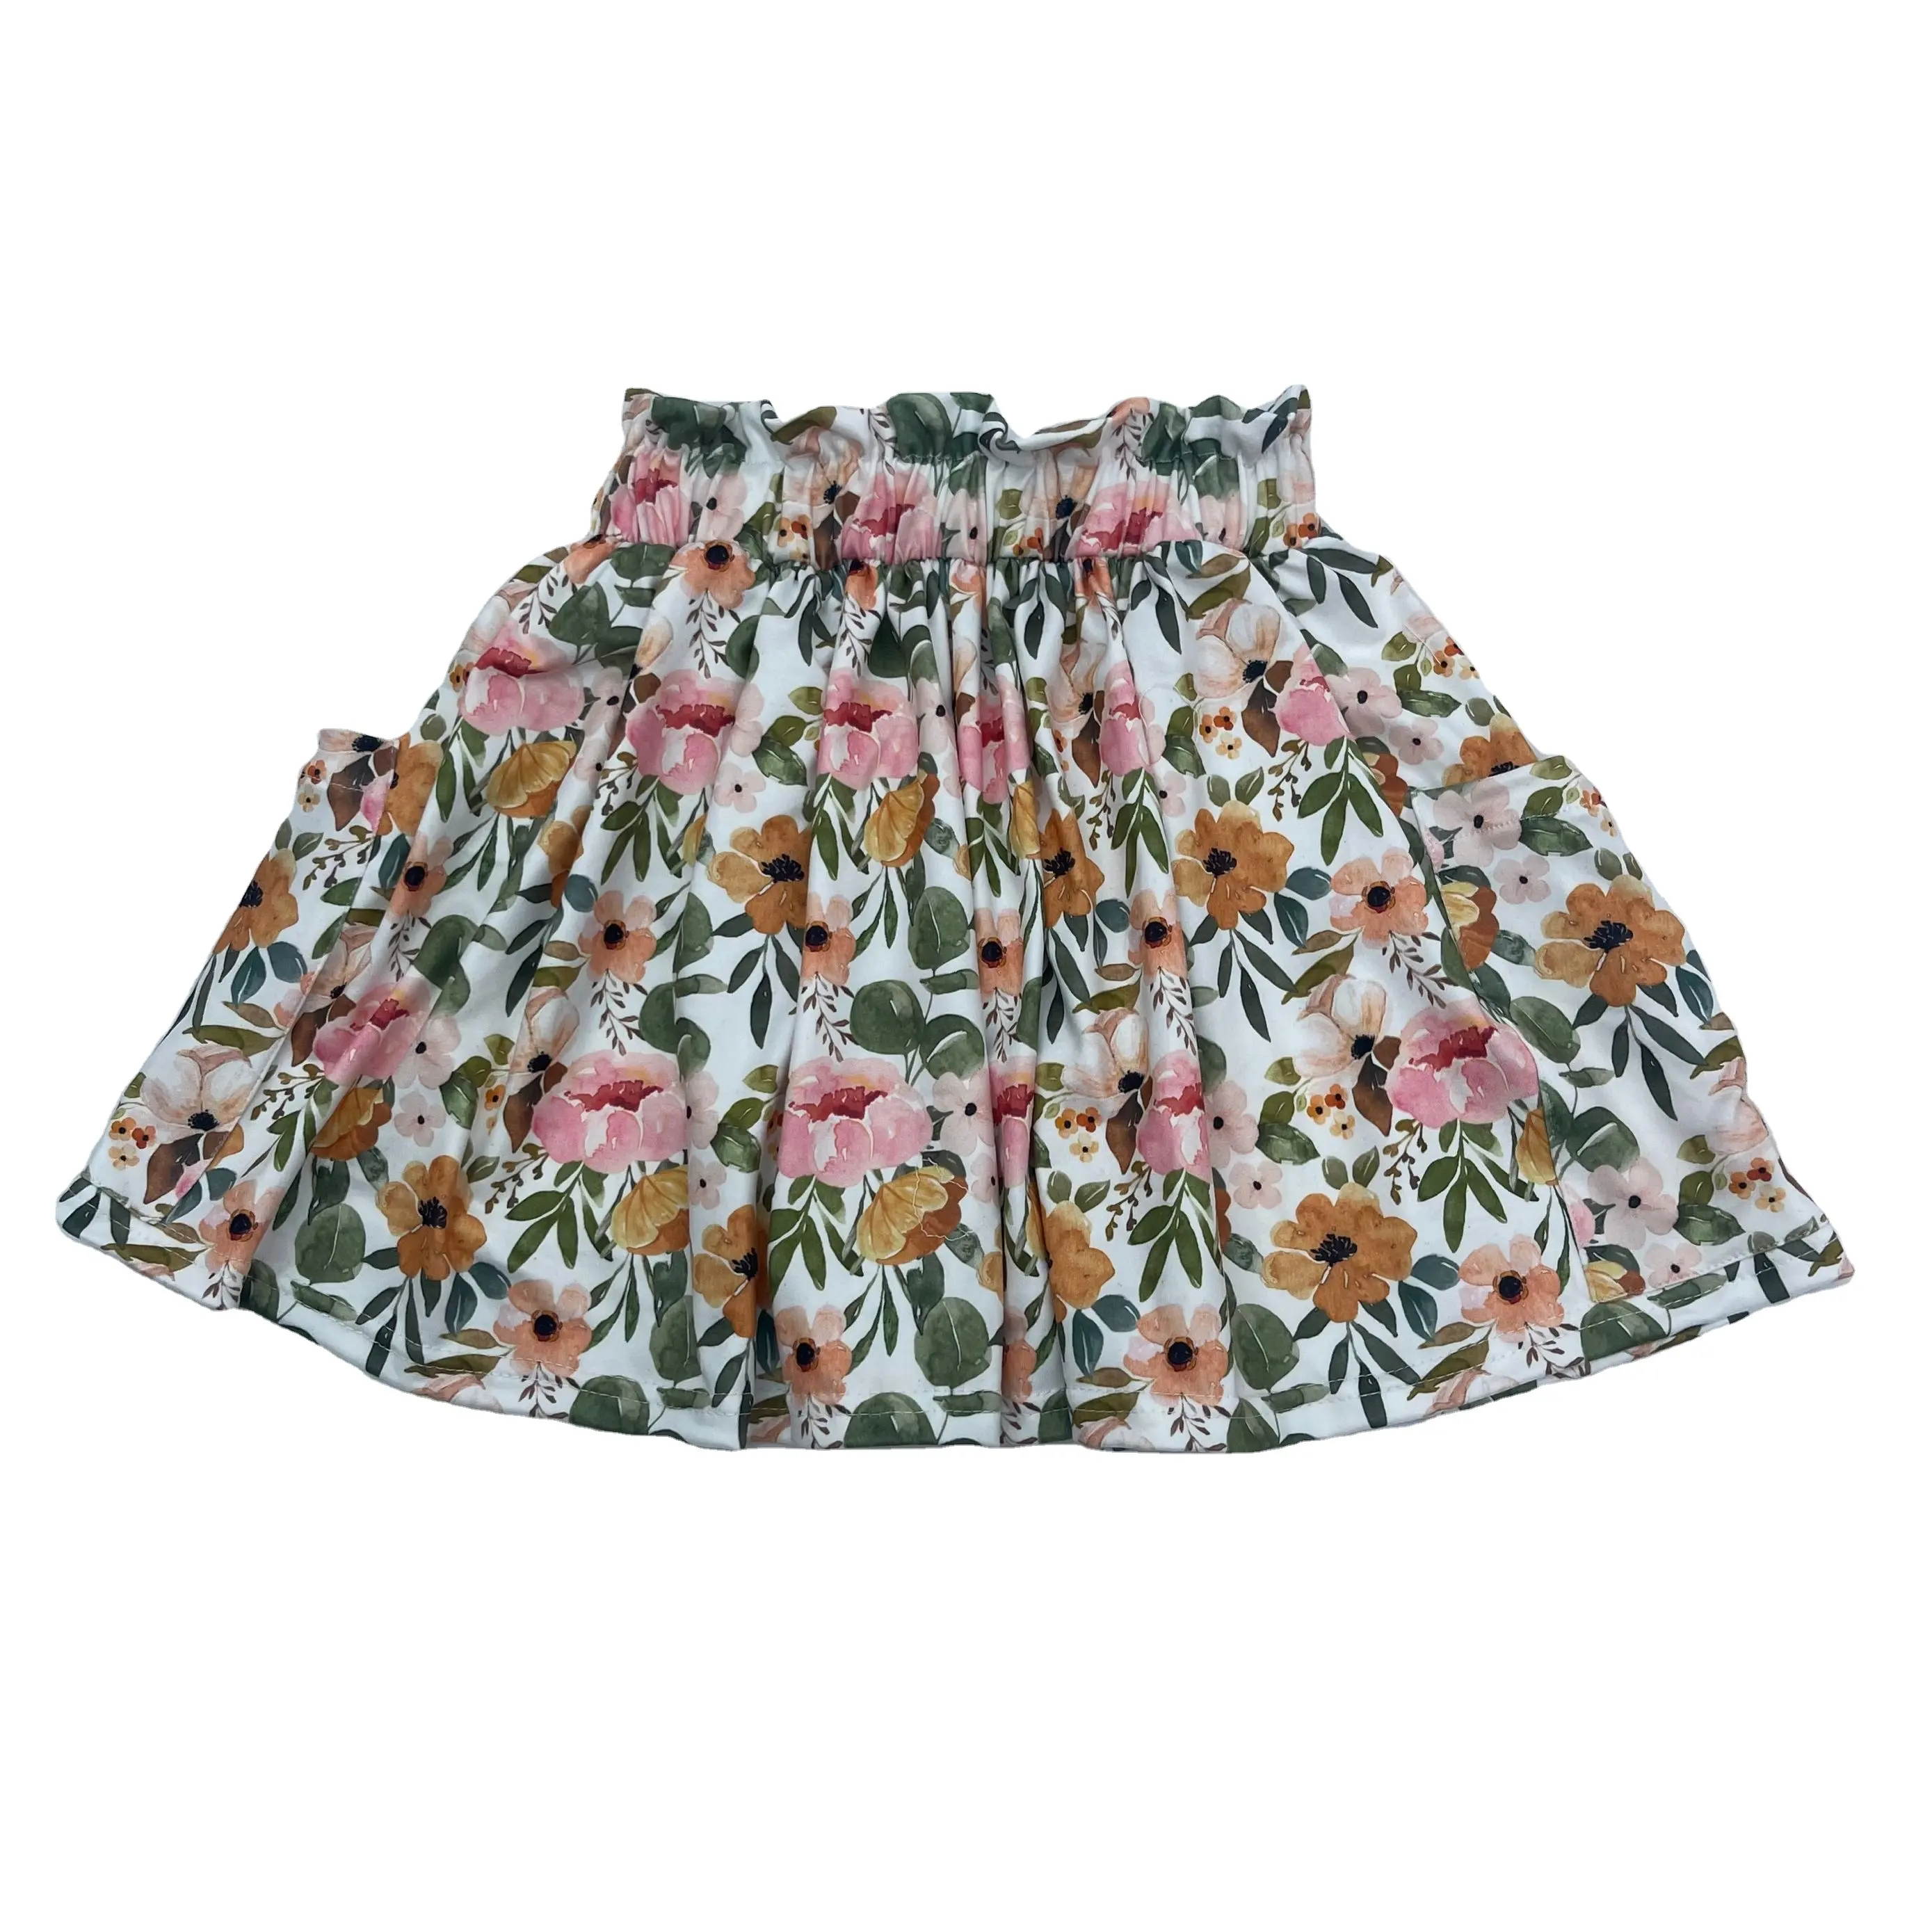 बच्चा लड़कियों टूटू स्कर्ट फूल राजकुमारी स्कर्ट लघु पैंट के तहत बच्चों नृत्य लोचदार कमर स्कर्ट के साथ जेब